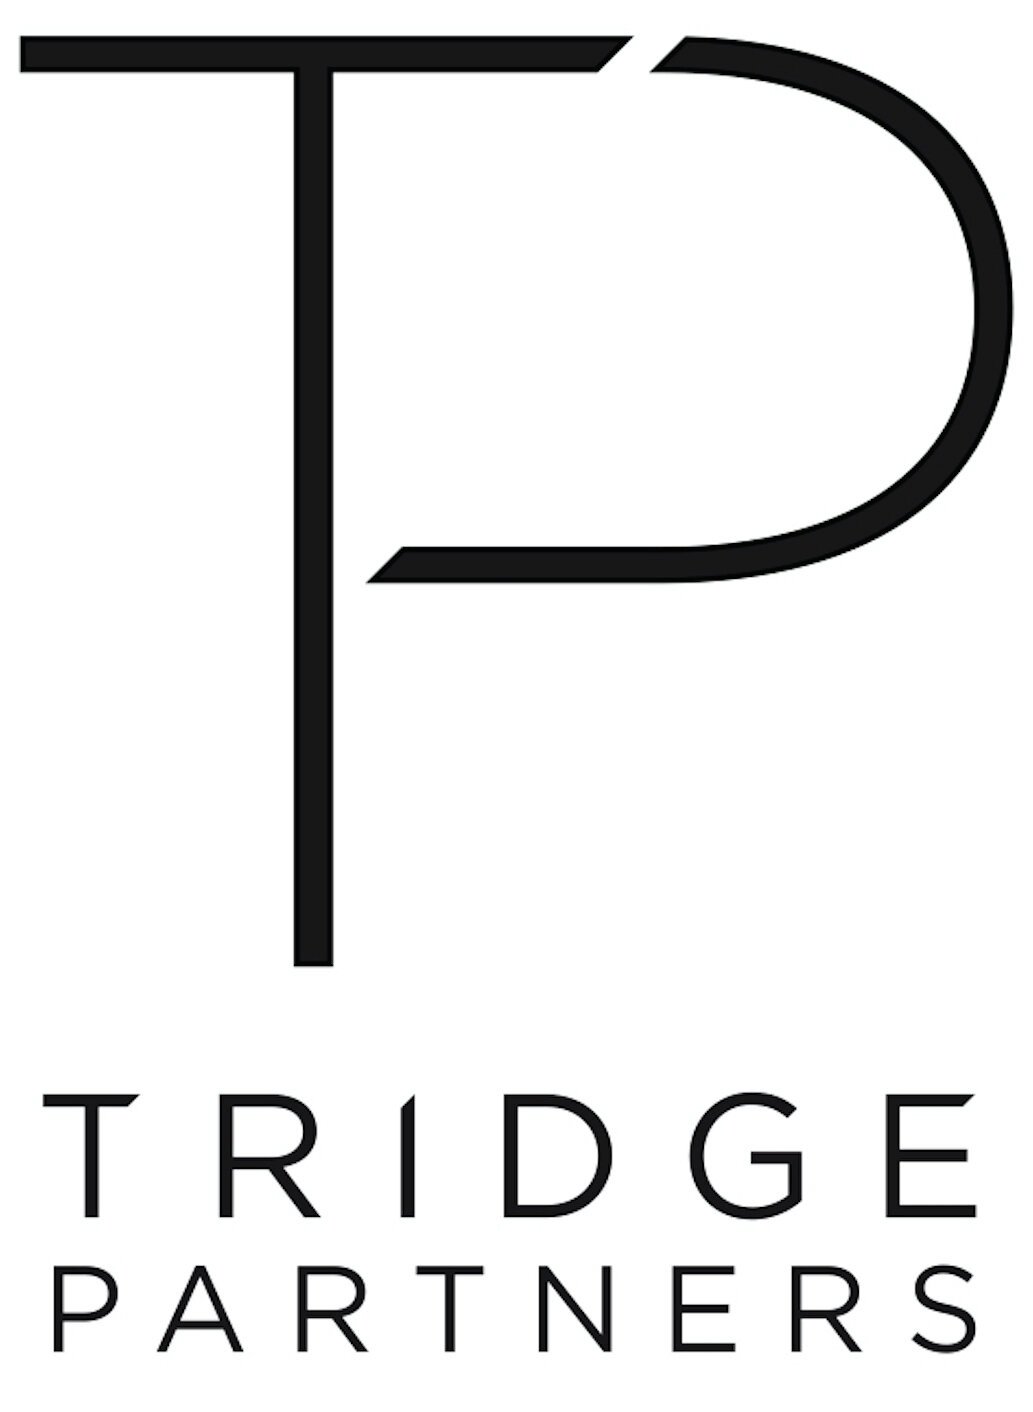 Tridge Partners